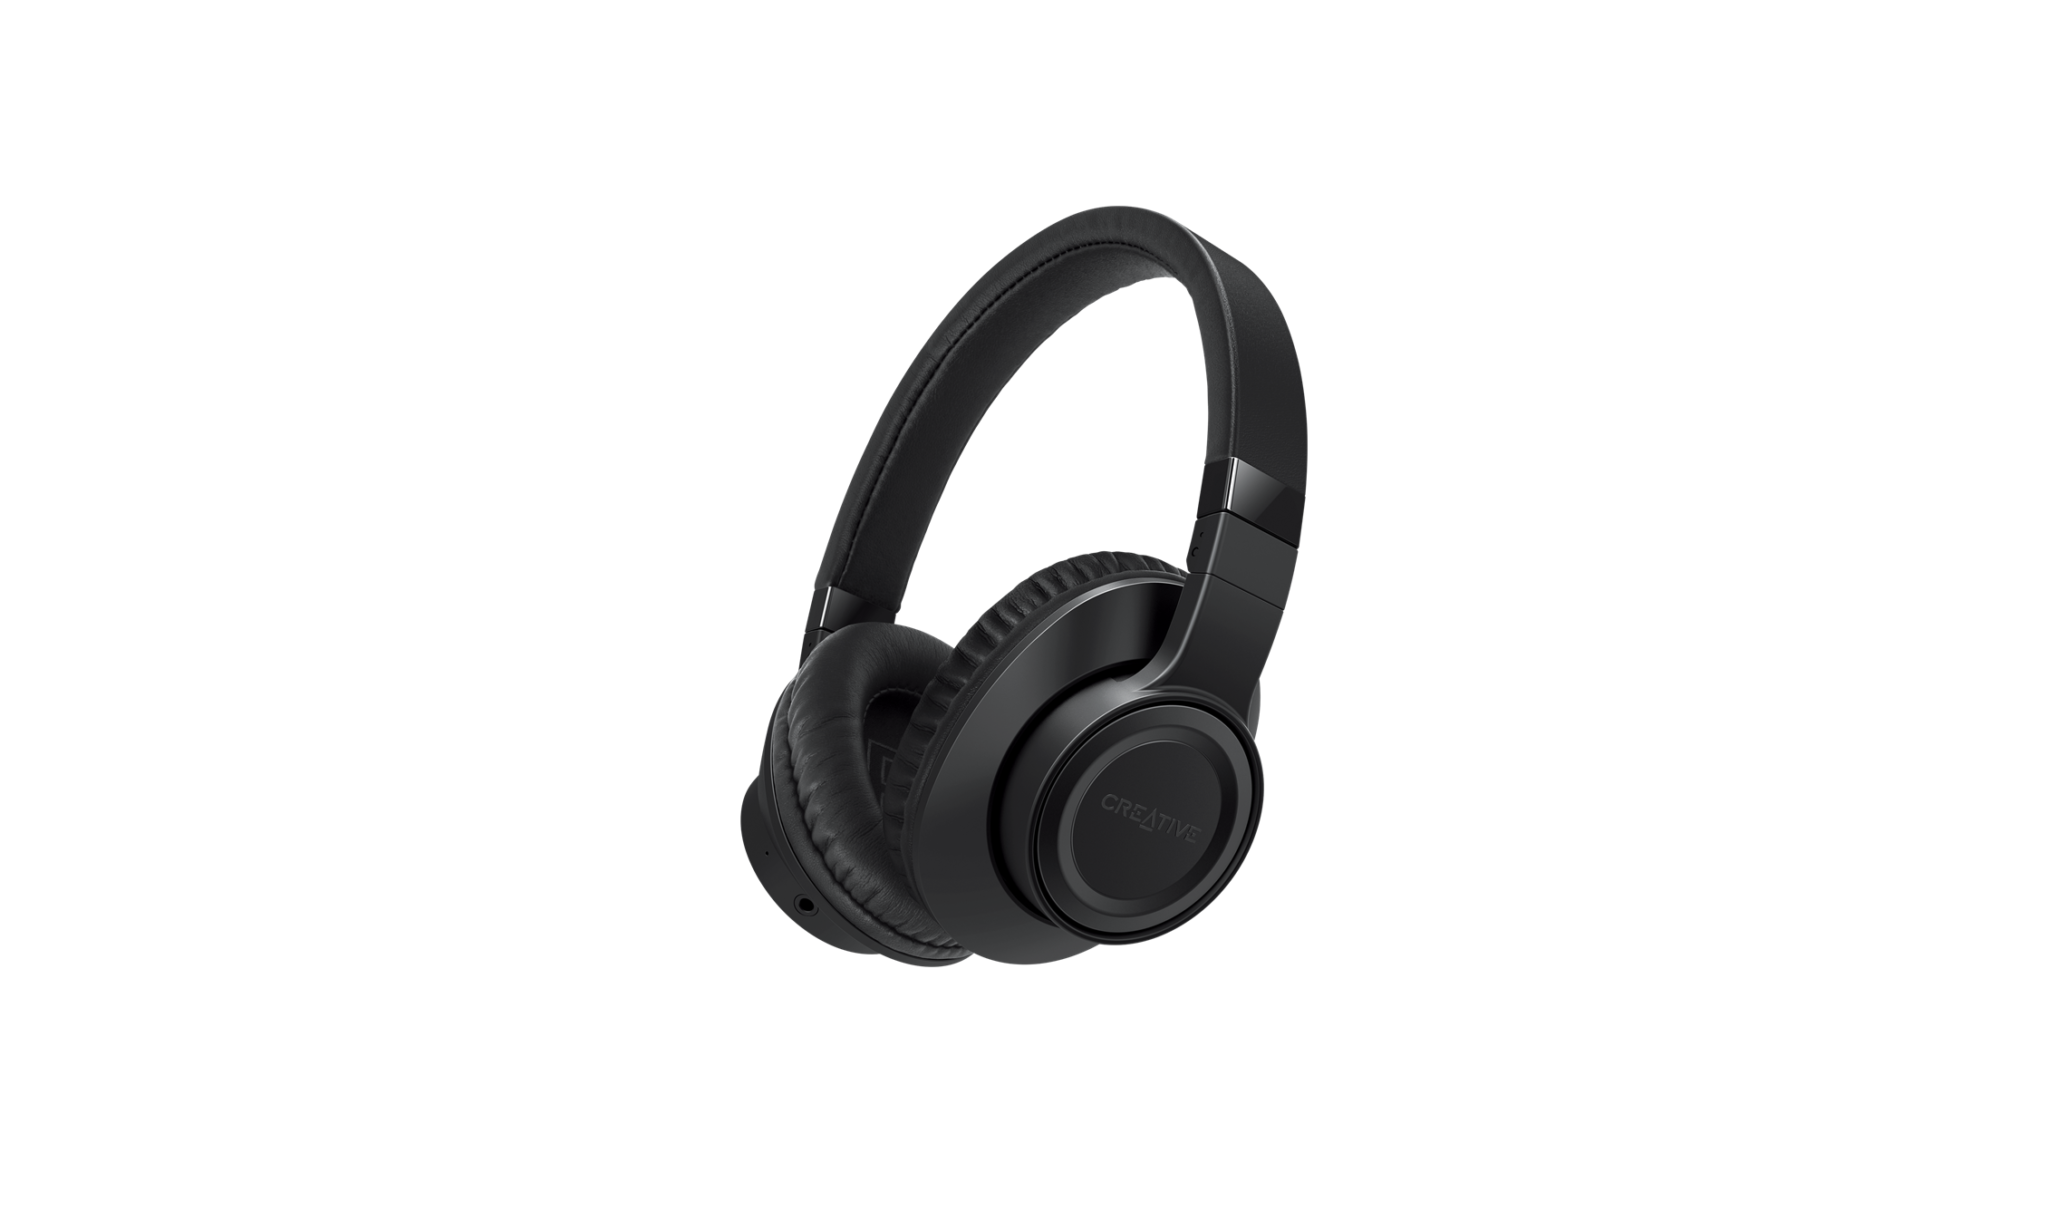 EF1010 WIRELESS OVER-EAR HEADPHONES